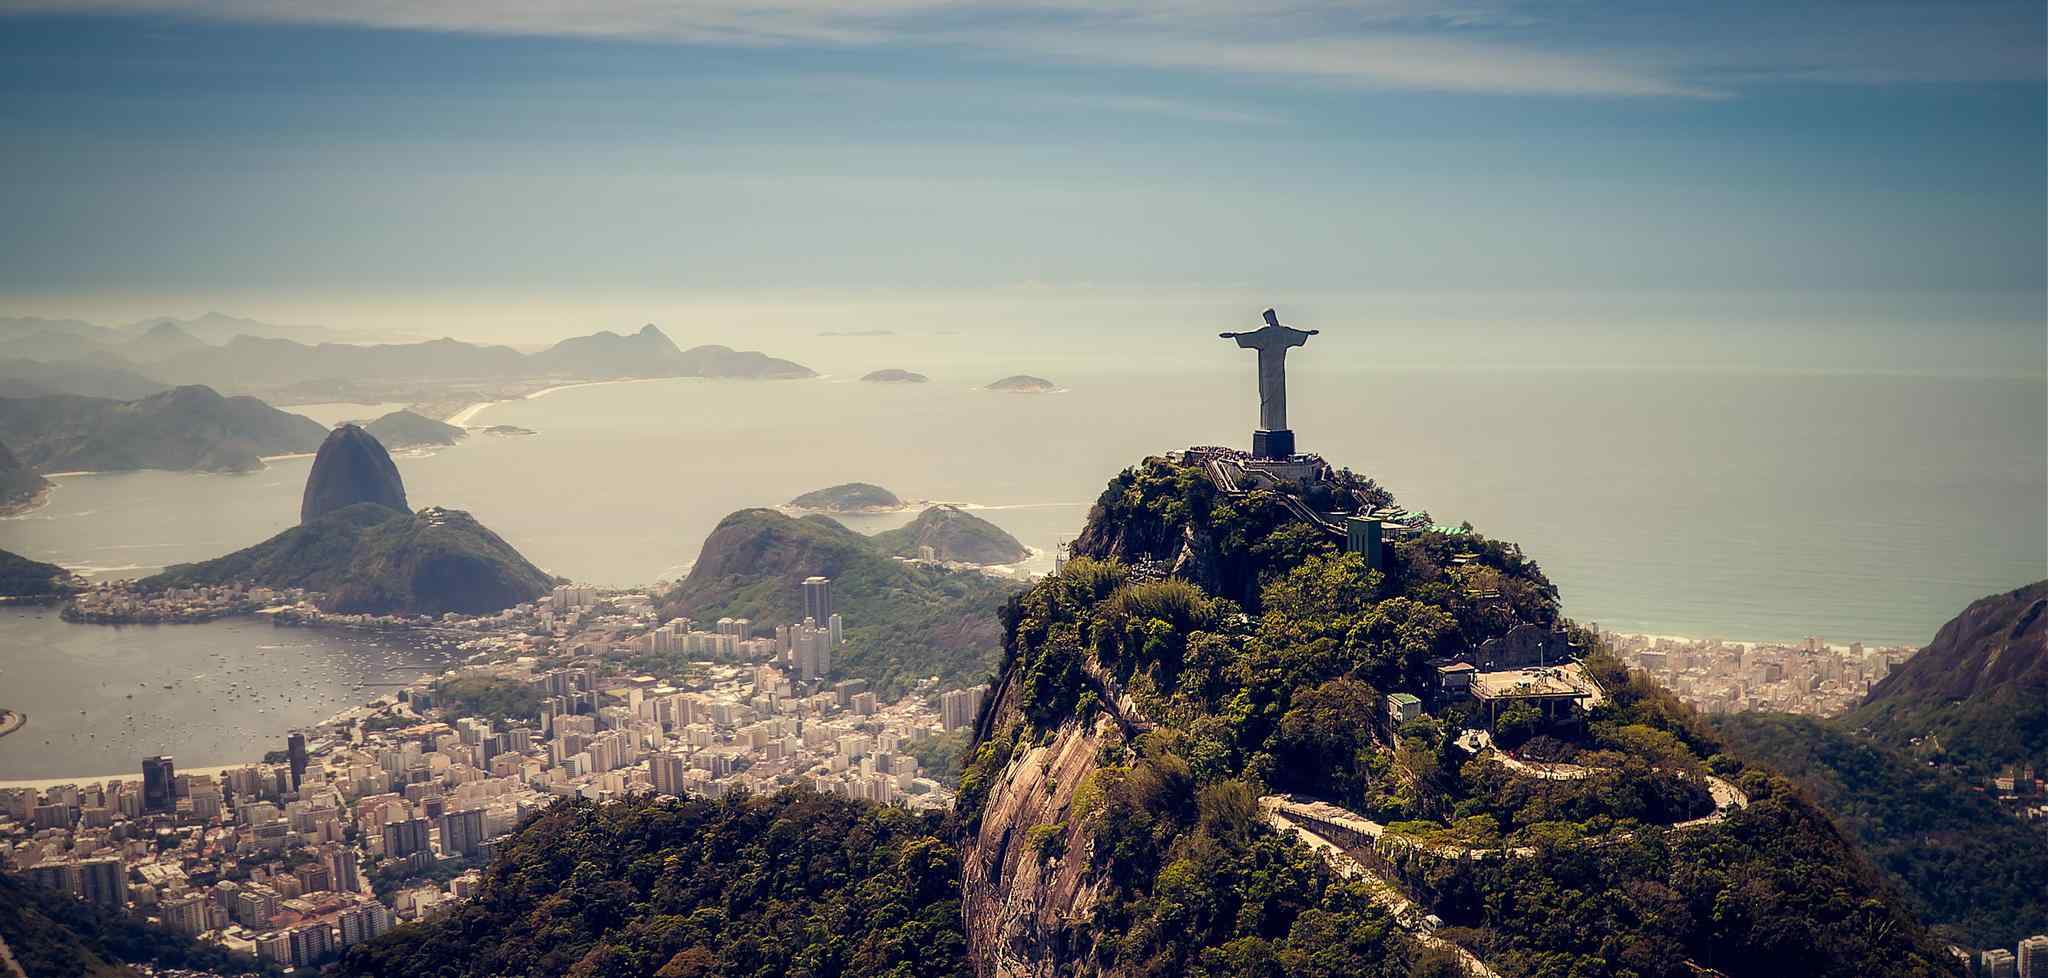 Rio de Janeiro: opções culturais, belezas naturais e vida noturna agitada 